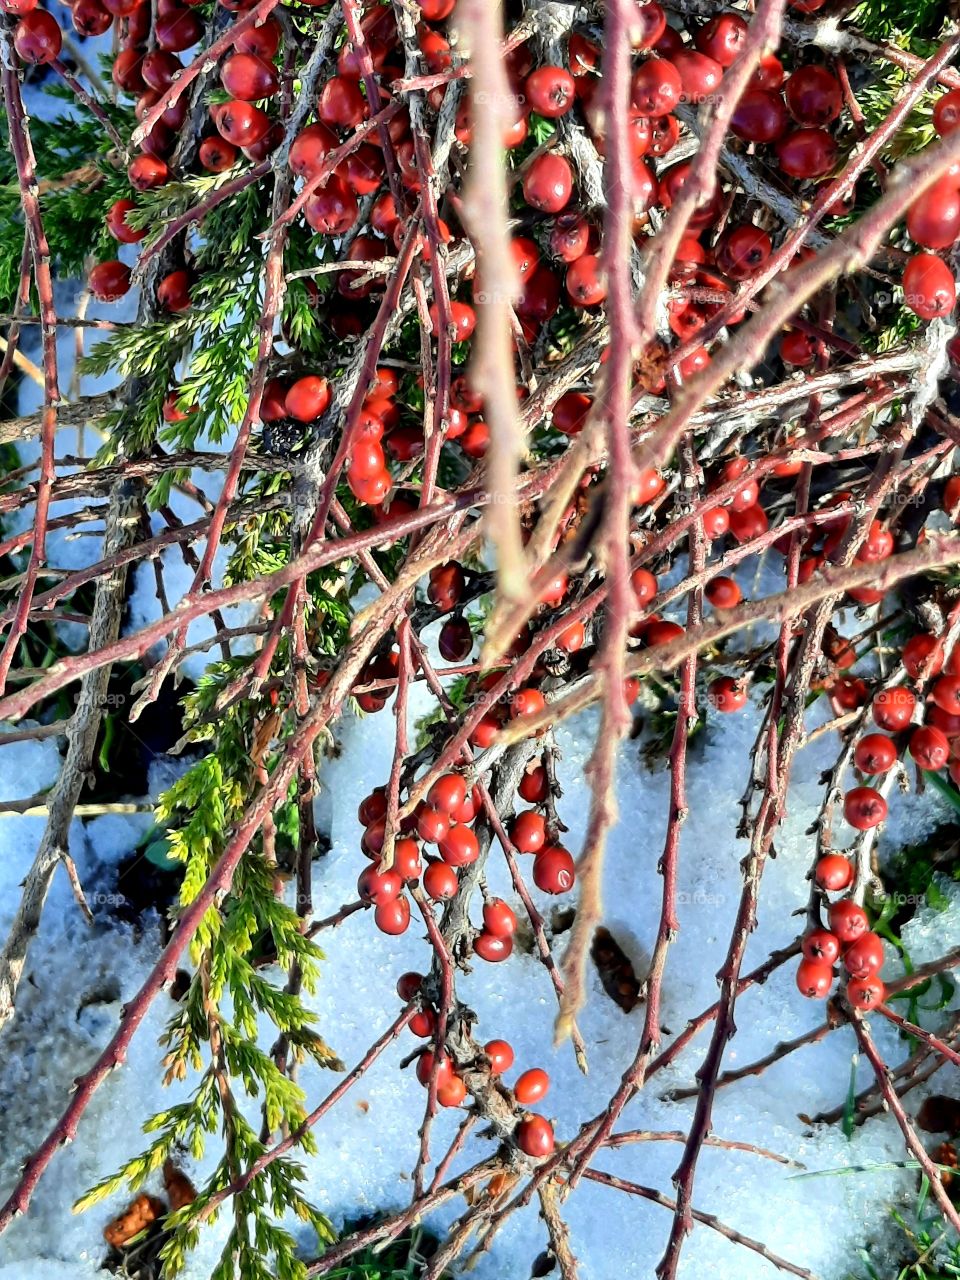 winter garden - sunlit red berries  of cotoneaster